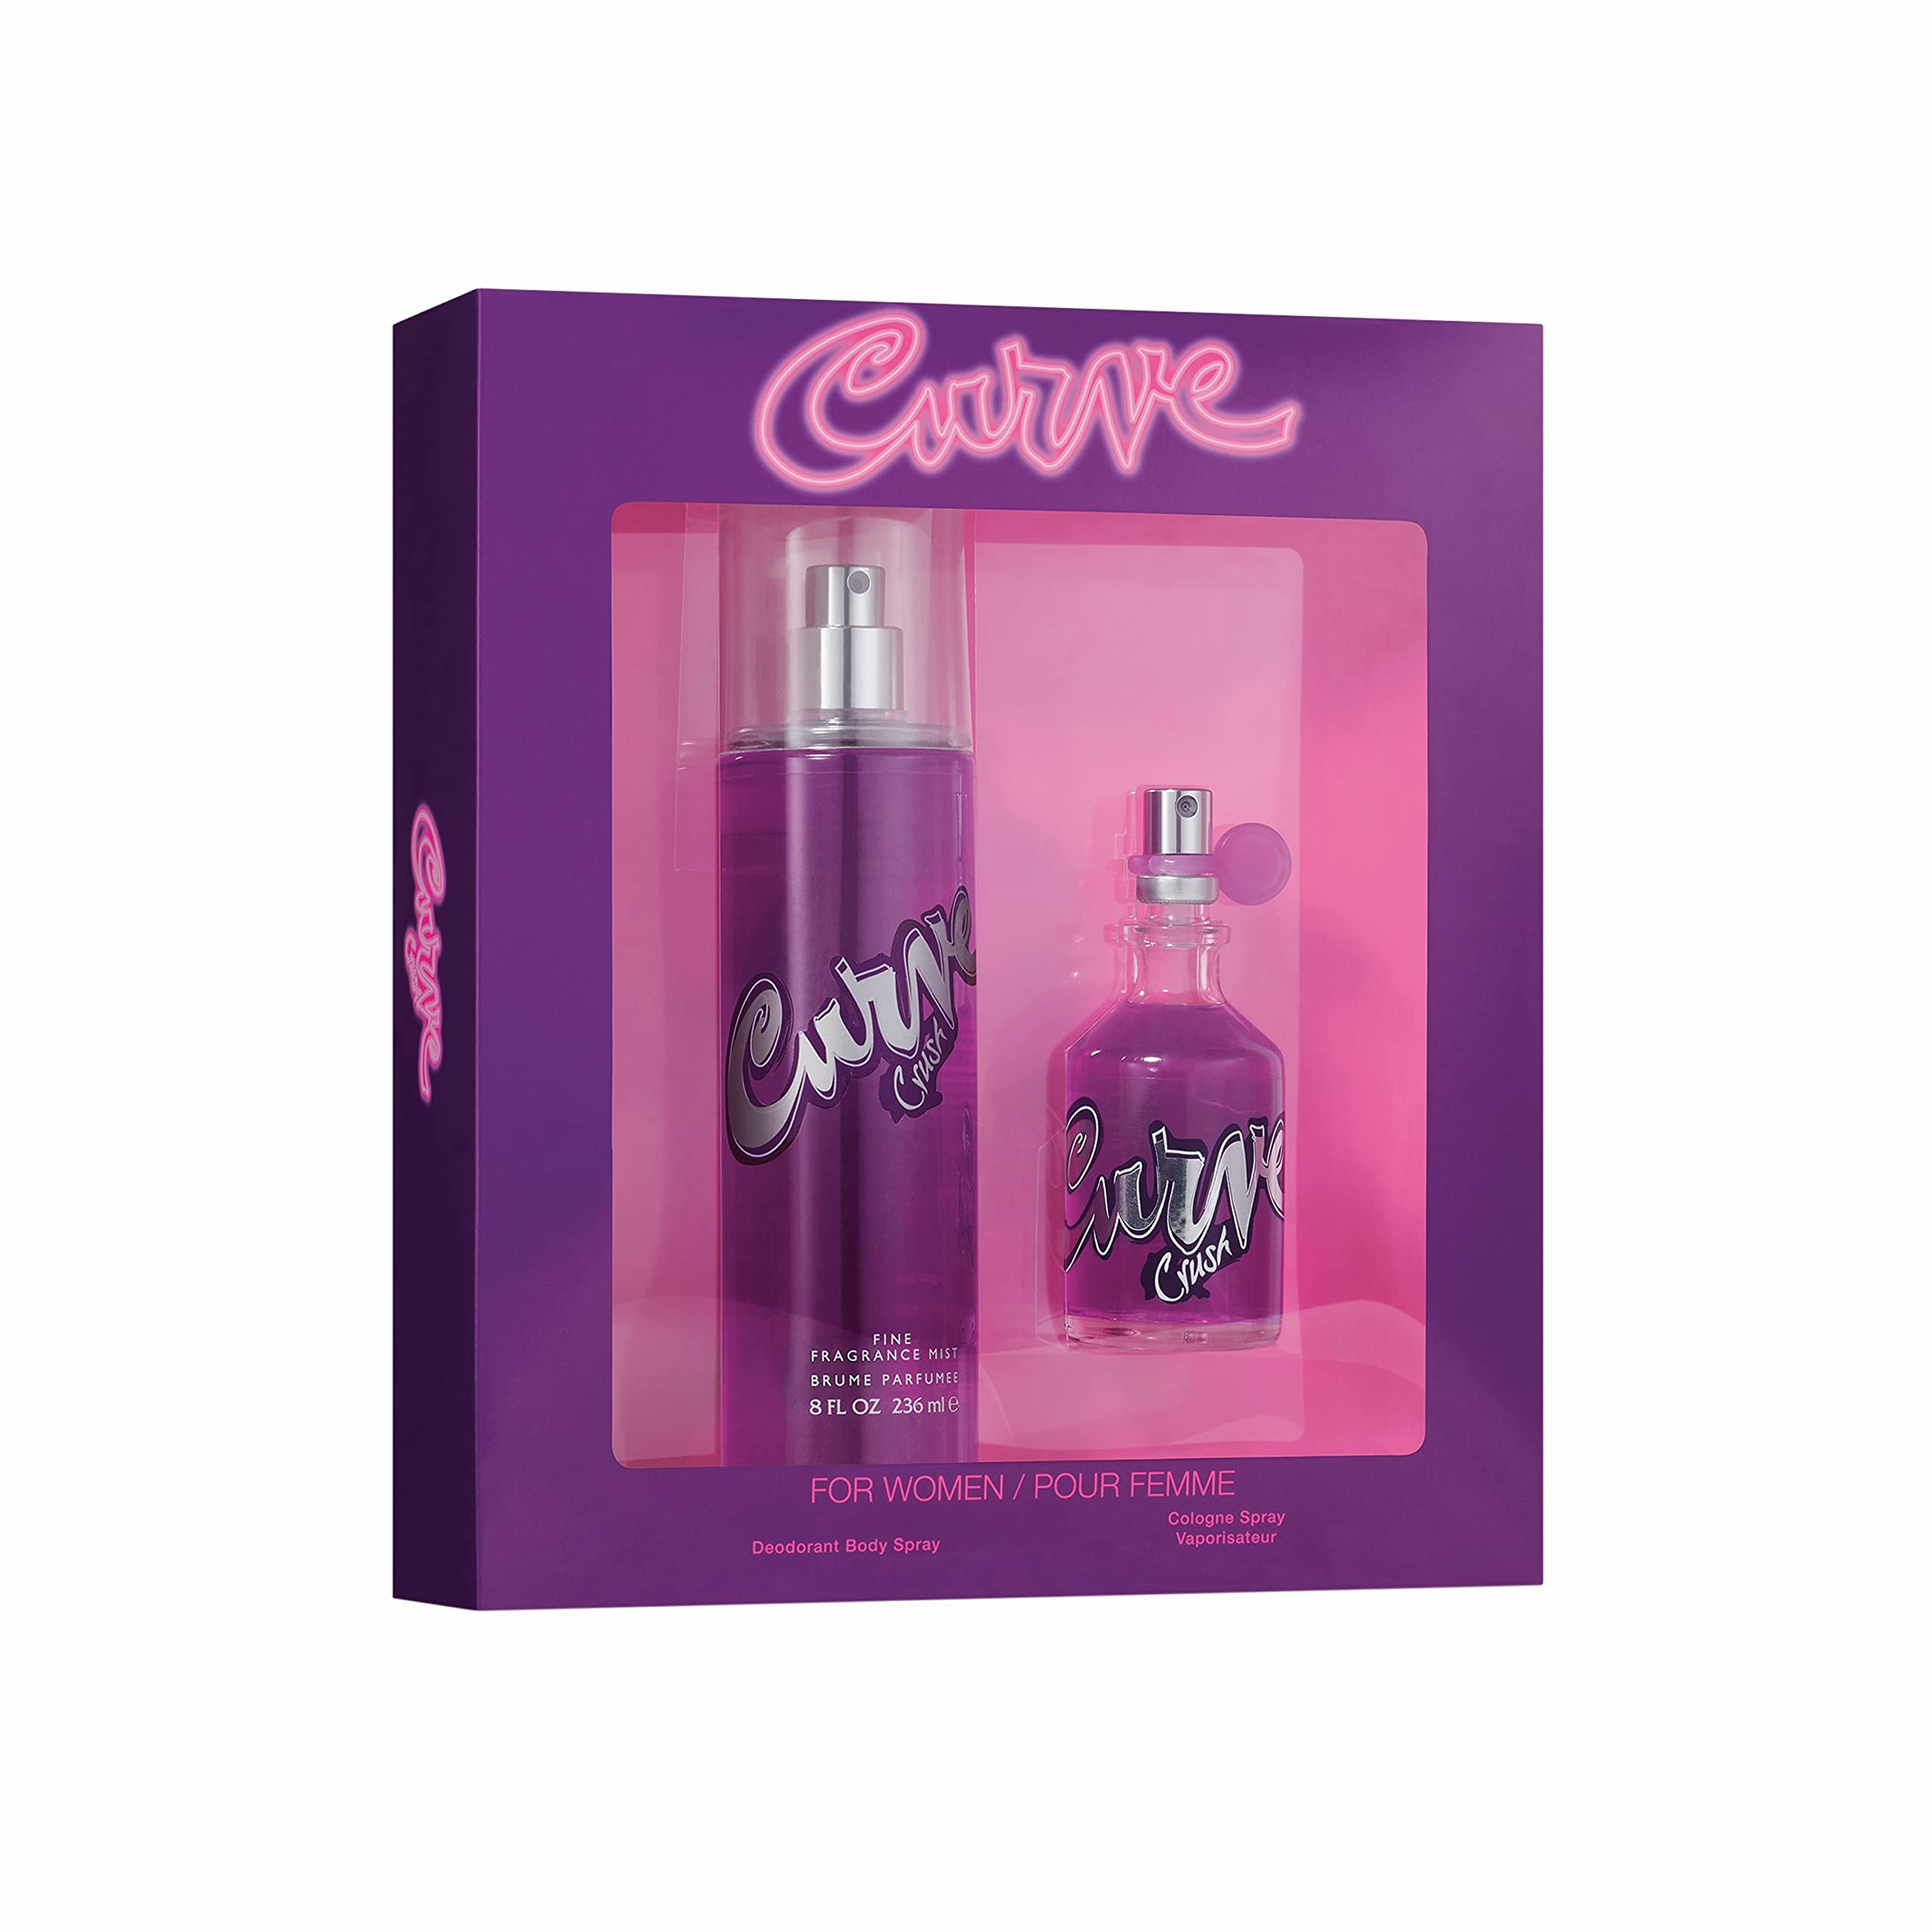 Curve Crush Women's Fragrance 2 Piece Gift Set, 1.7 fl. oz. Eau de Toilette and 8.0 oz Body Mist